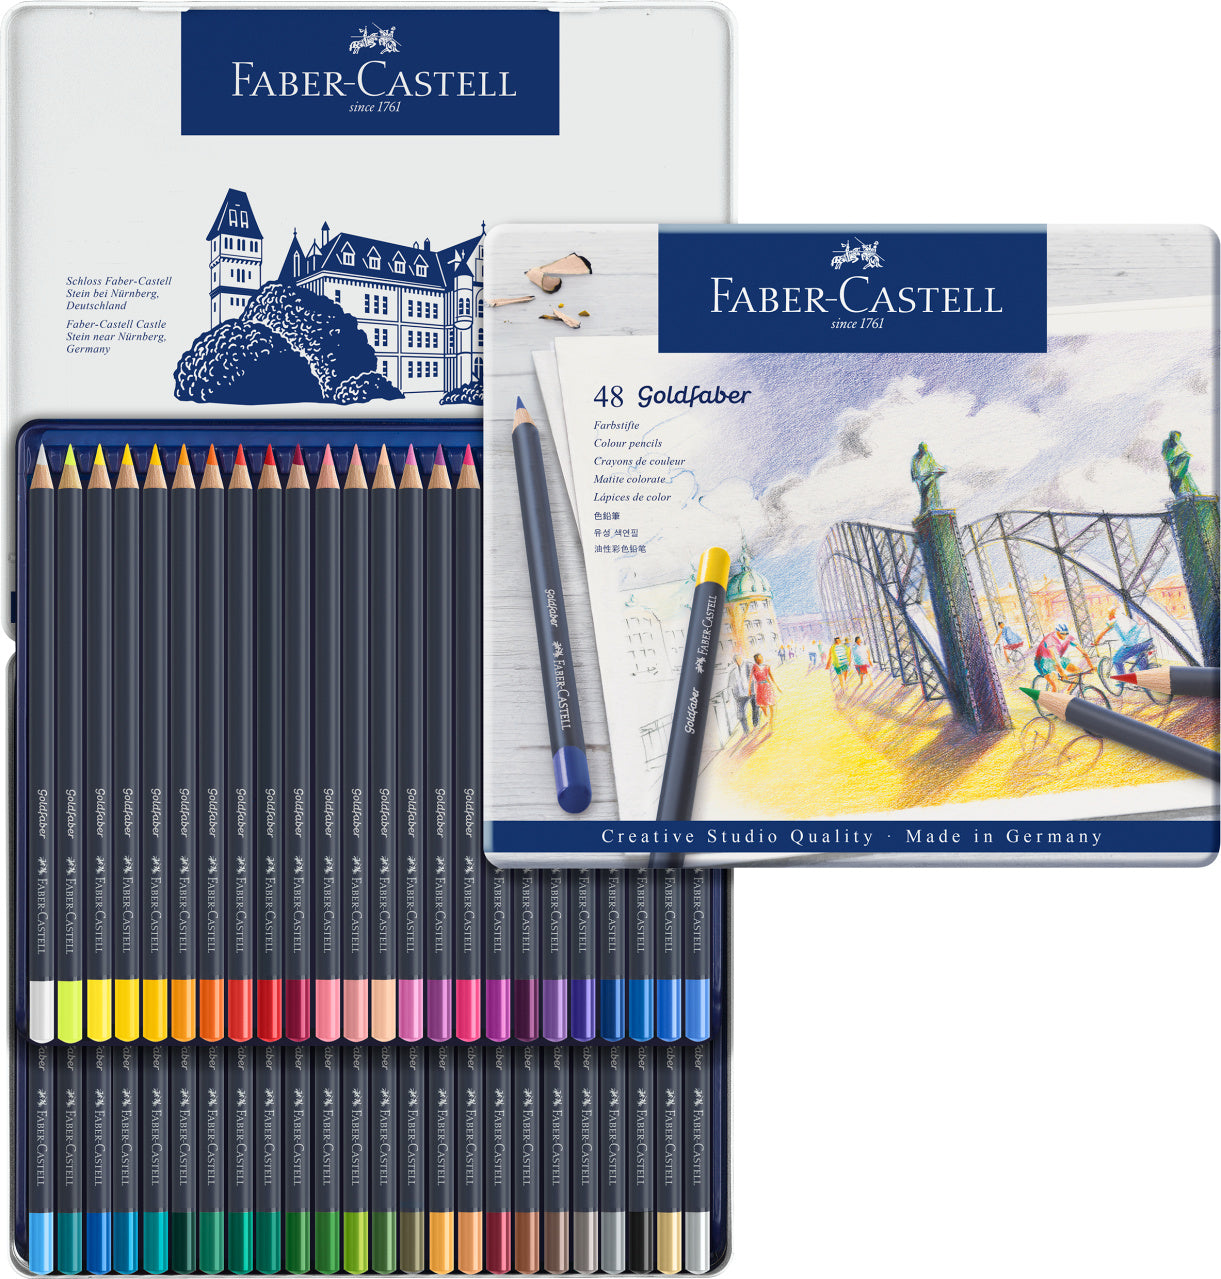 Lápices de colores pastel 1335-2 – TRYME